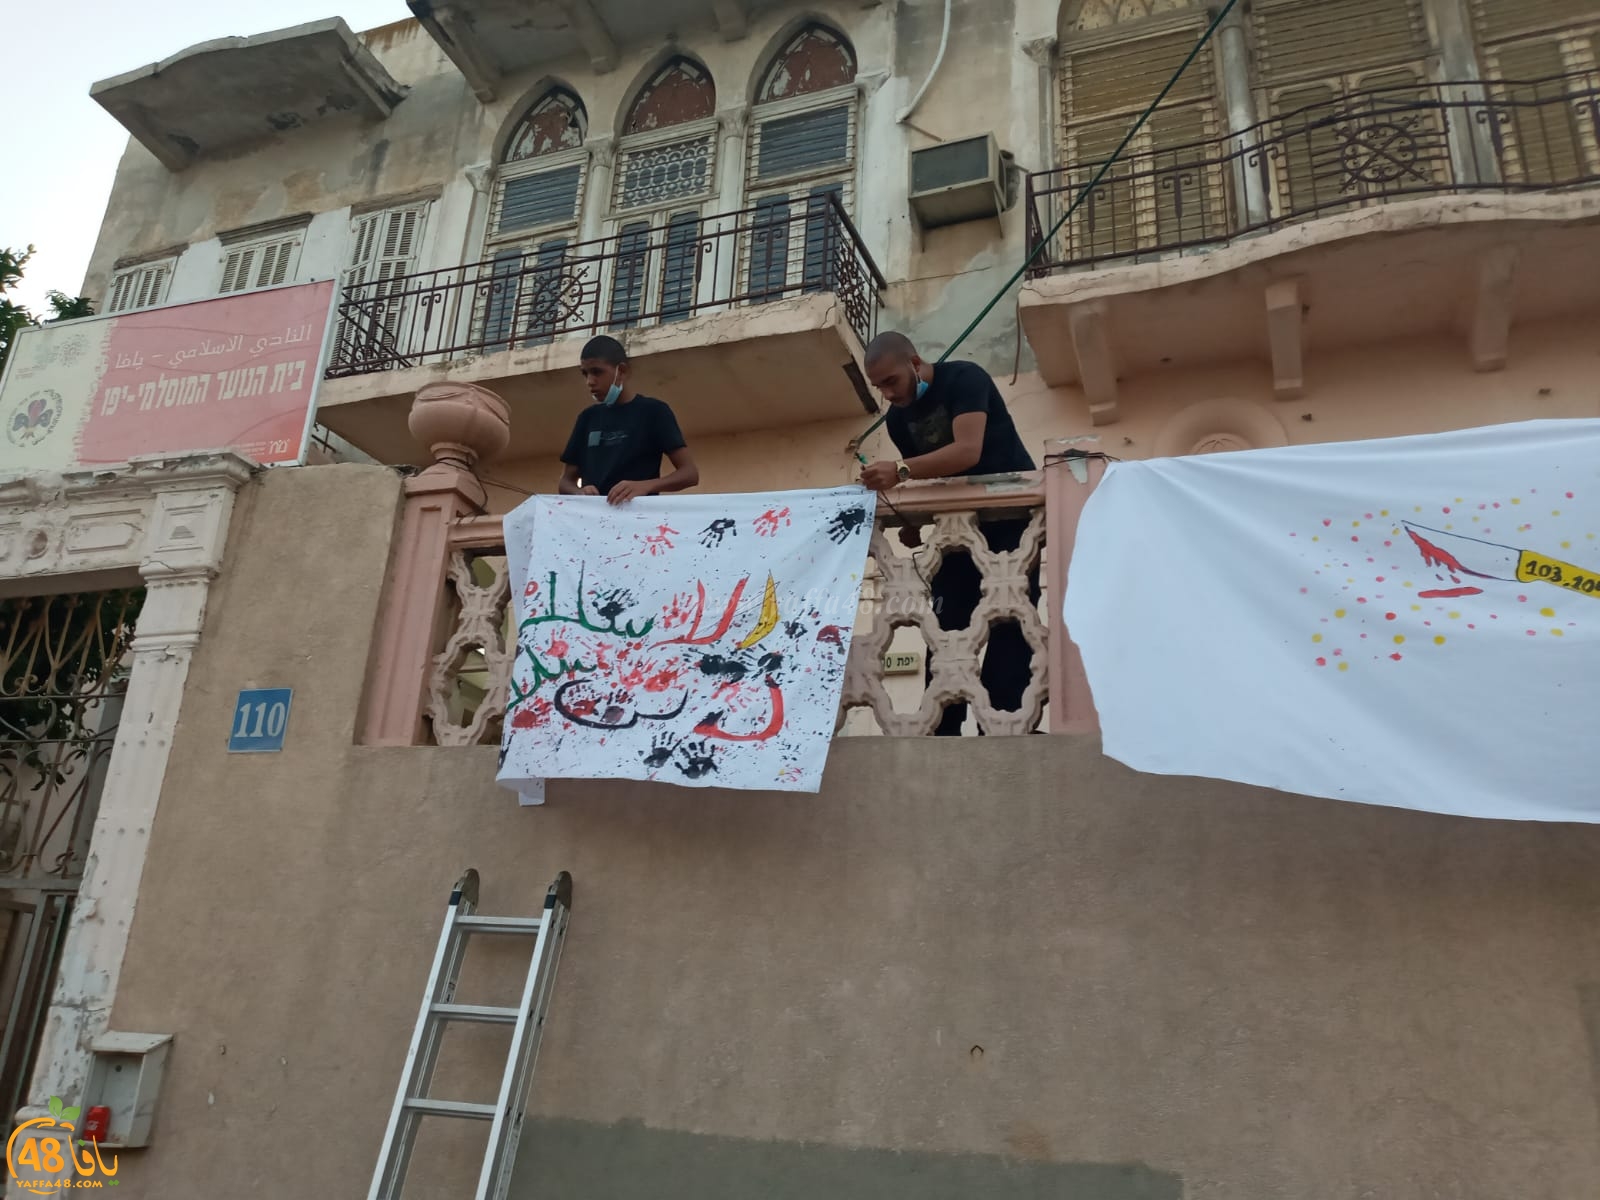 يافا: كشاف النادي الاسلامي يُعلن عن الغاء مسيرة العيد احتجاجاً على العنف وجرائم القتل